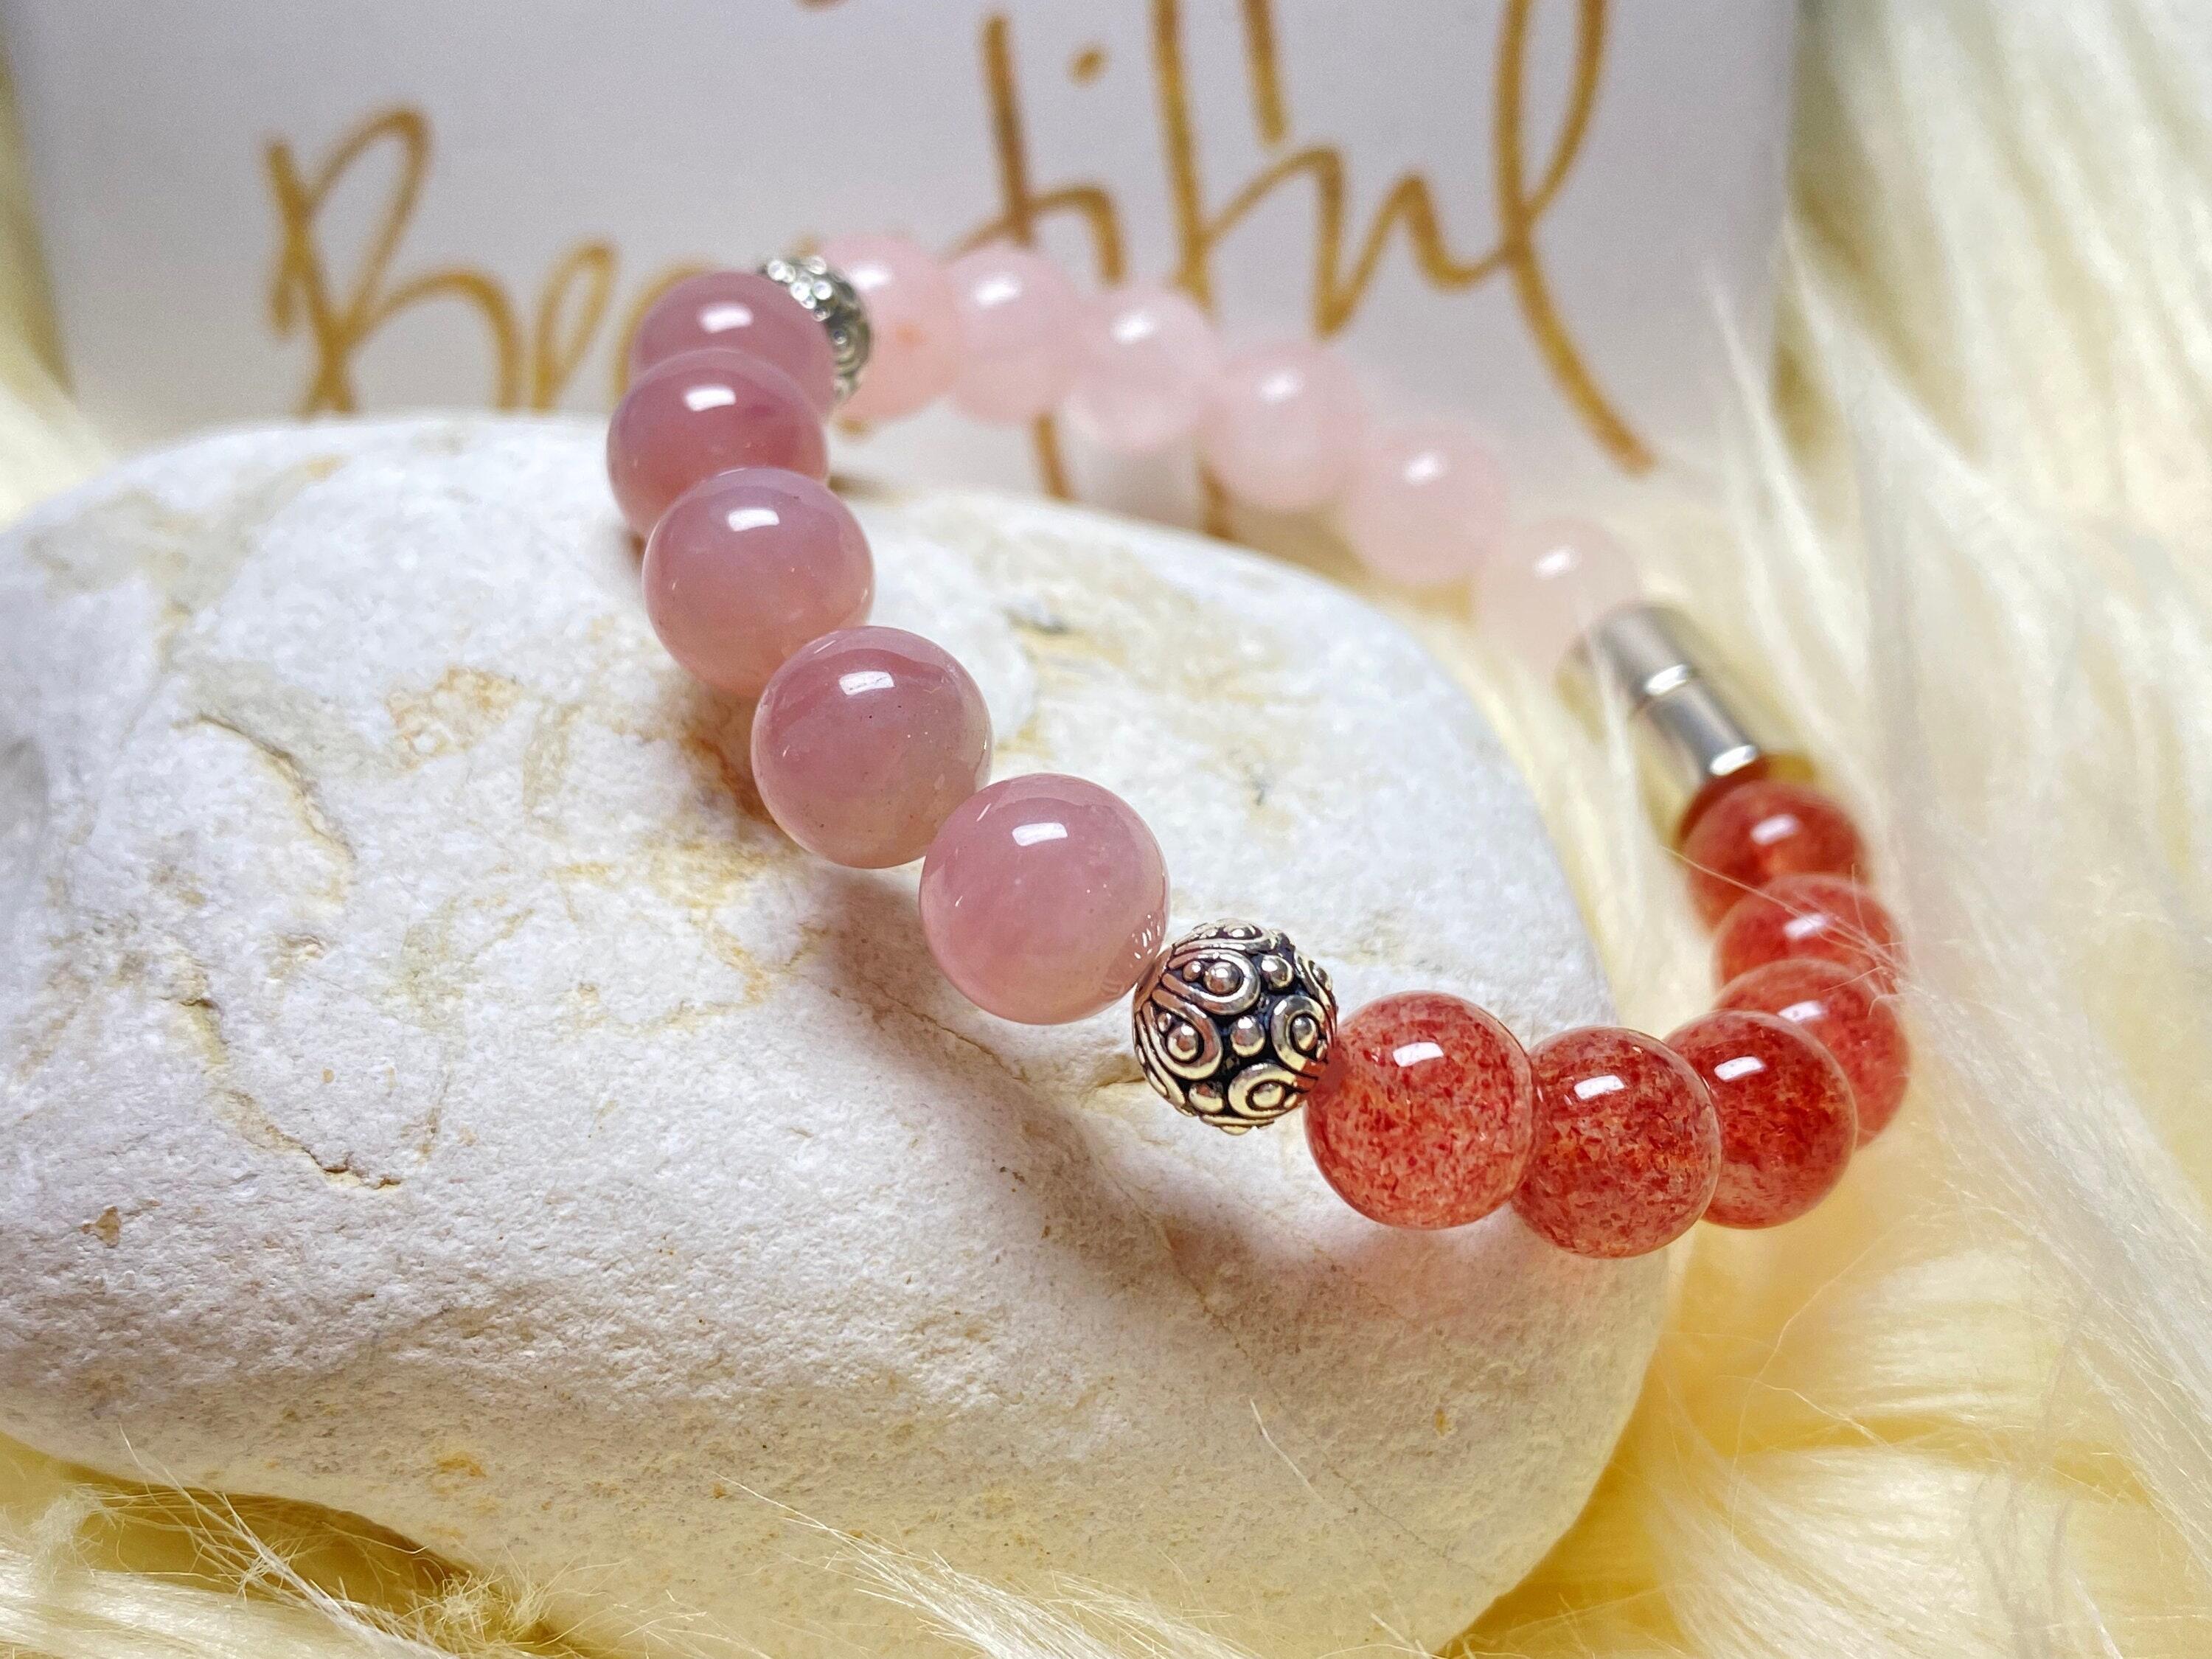 Garnet, Rose Quartz and Strawberry Quartz Bracelet (8mm Beads) Small - 6.5 / Silver